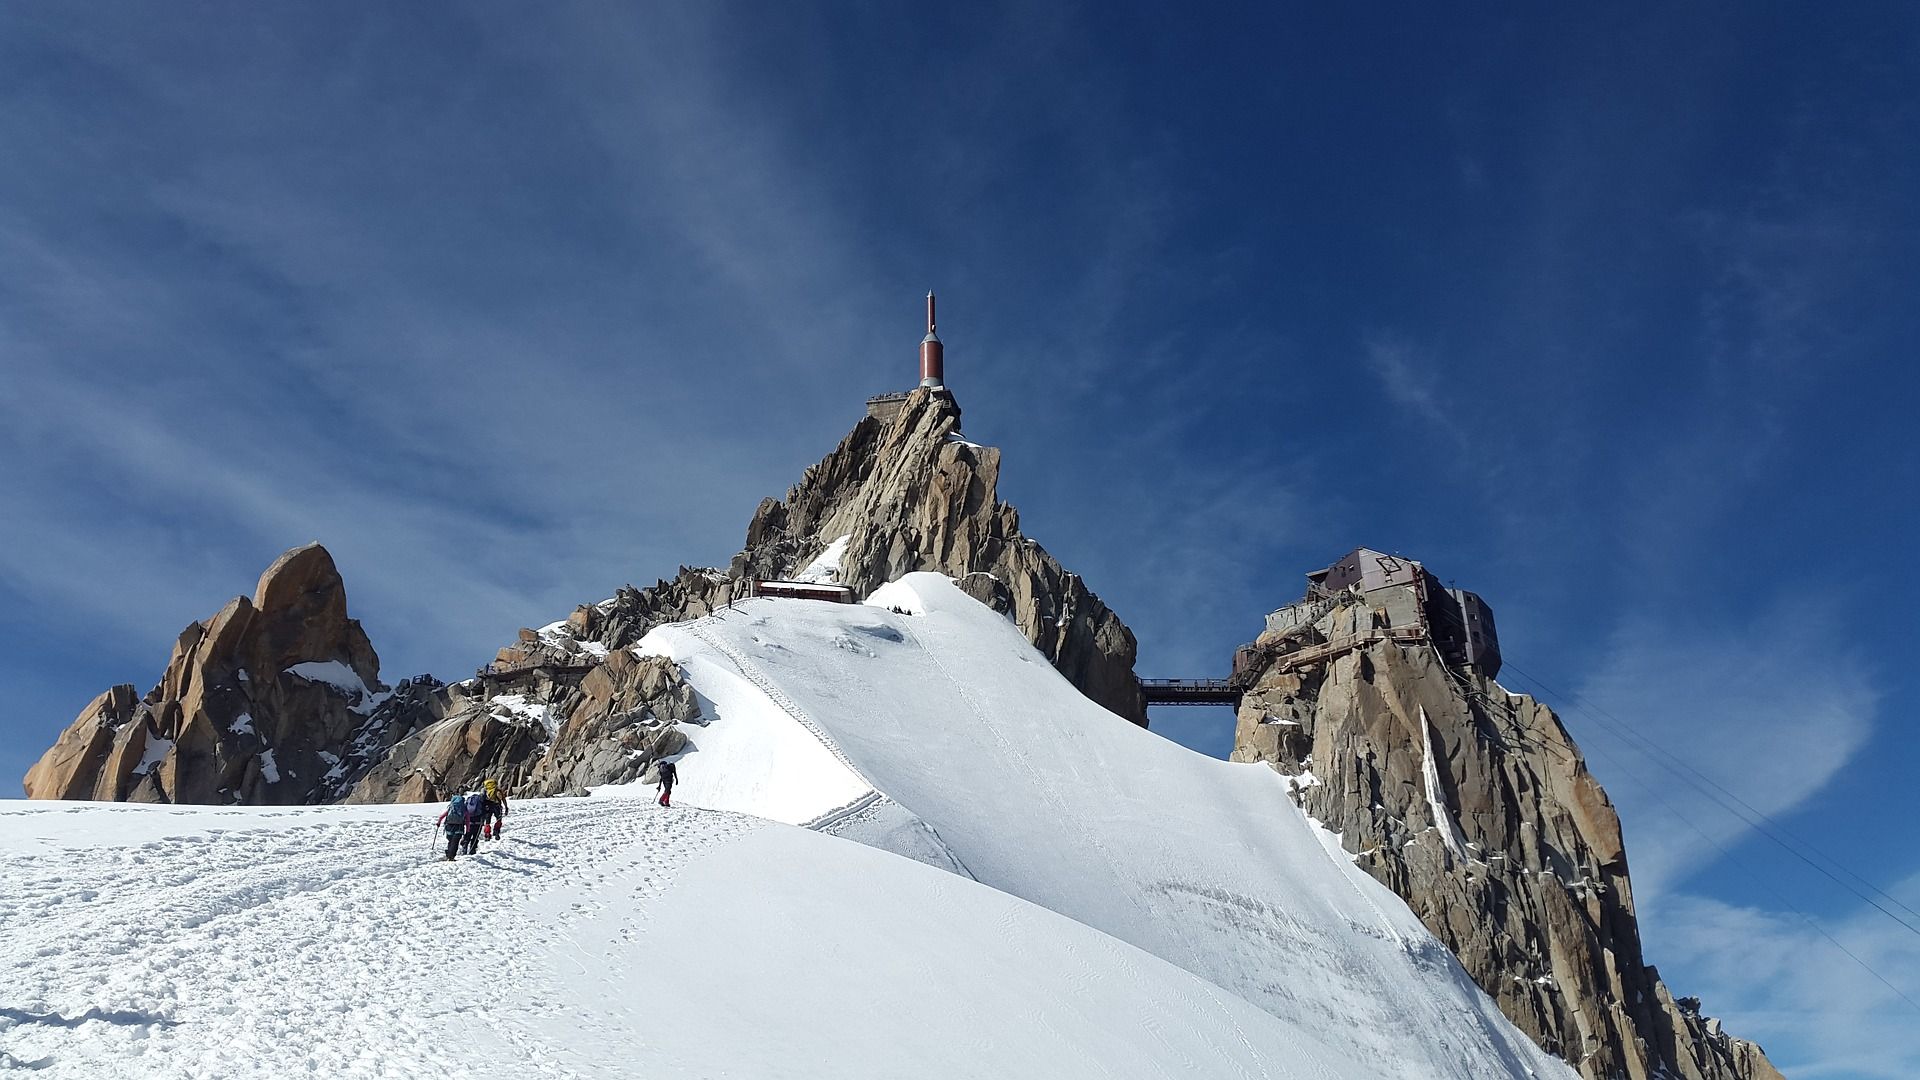 Settimana bianca in Italia: cosa fare se non sai sciare?